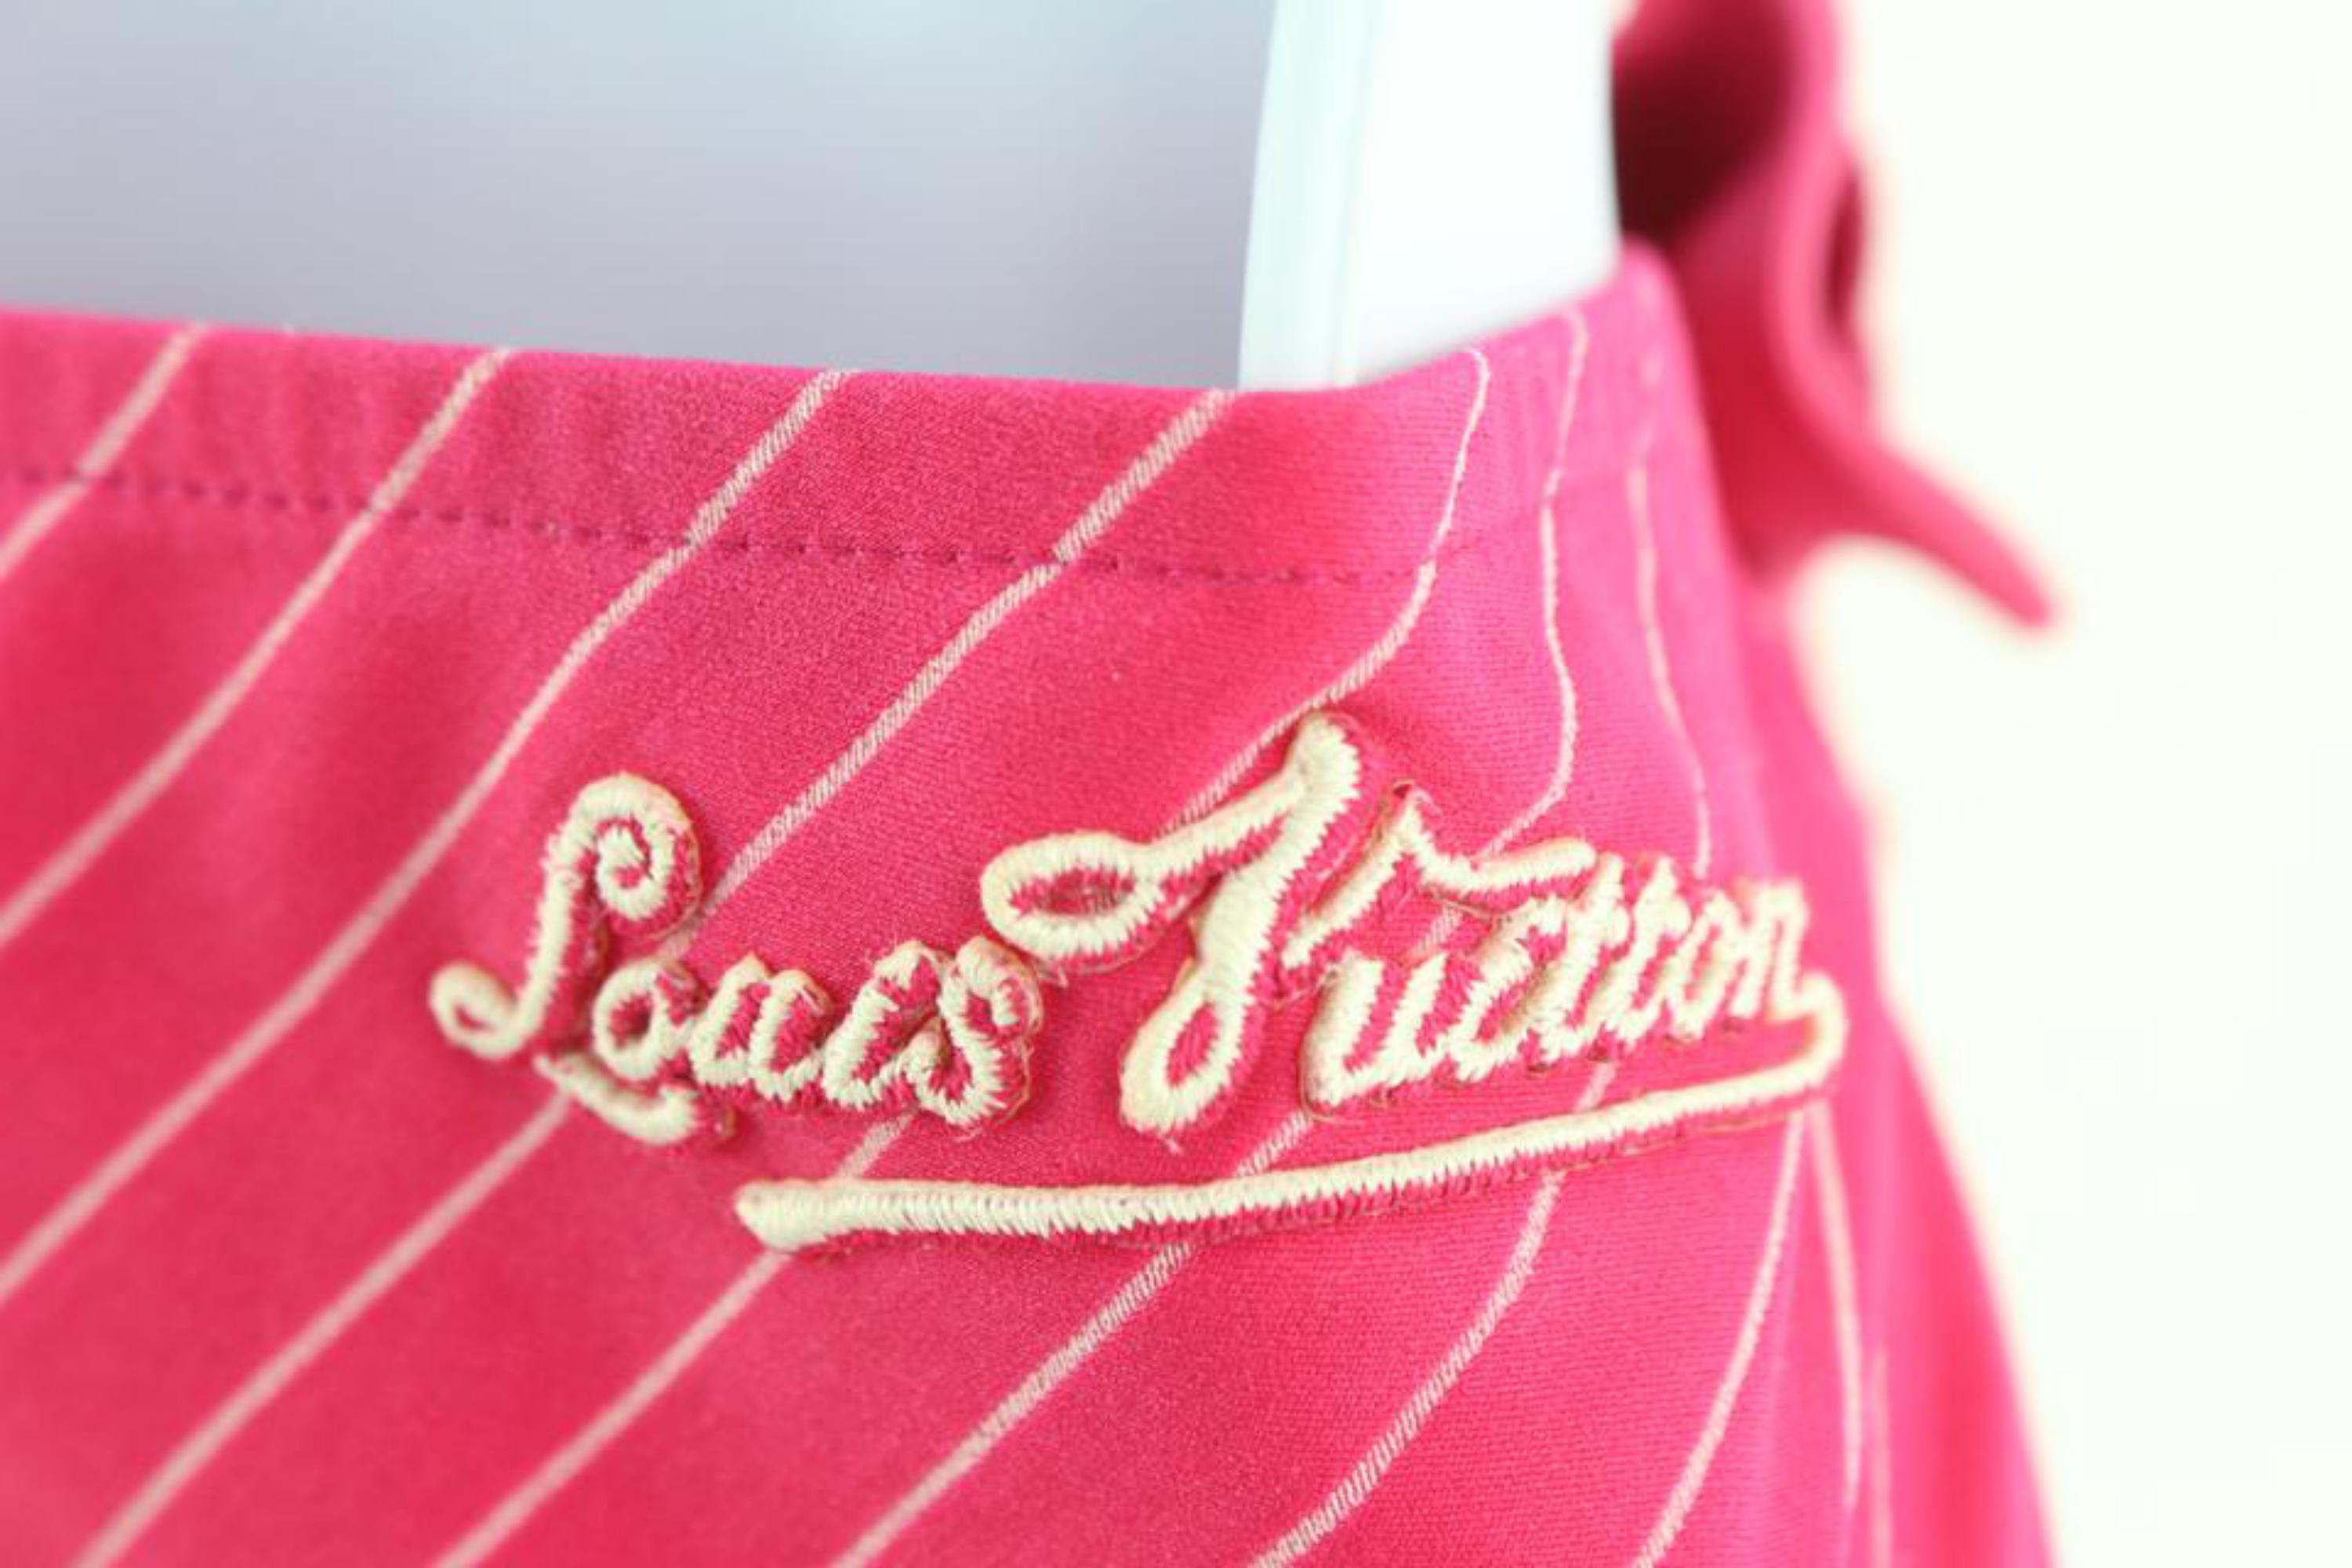 Louis Vuitton Größe 36 Fuchsia Hot Pink Pin Stripe Bikini 1224lv31
Hergestellt in: Frankreich 
Maße: Unten: Länge:  13